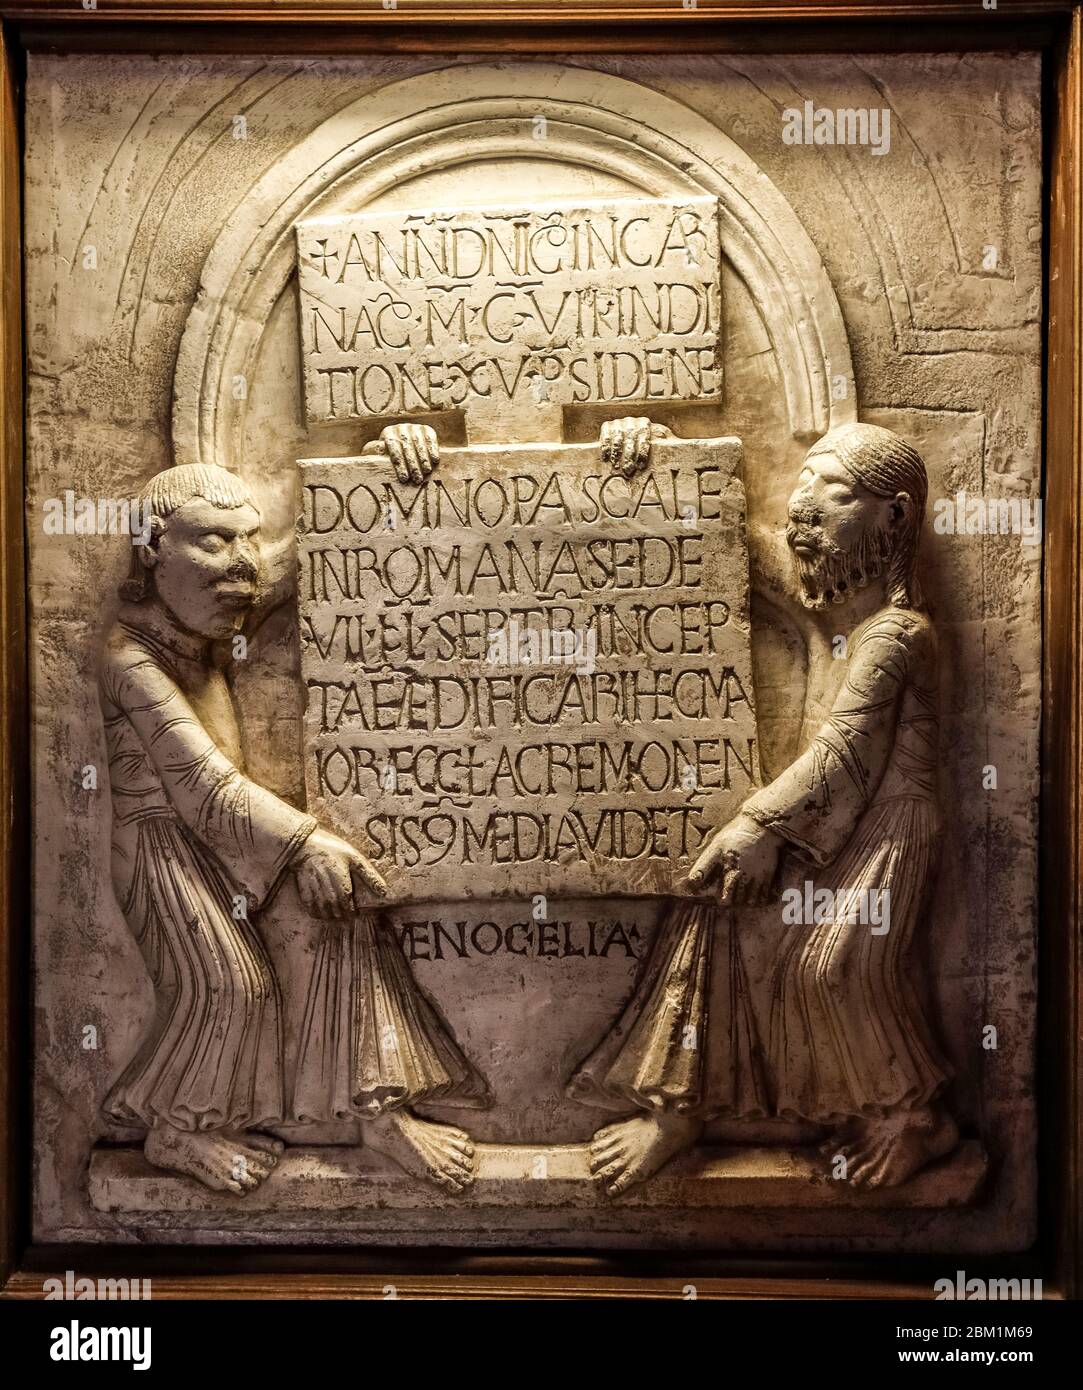 Italia Lombardía - Cremona: Baptisterio - Fundación epigrafía (año 1107) con los profetas Enoc y Elías Foto de stock